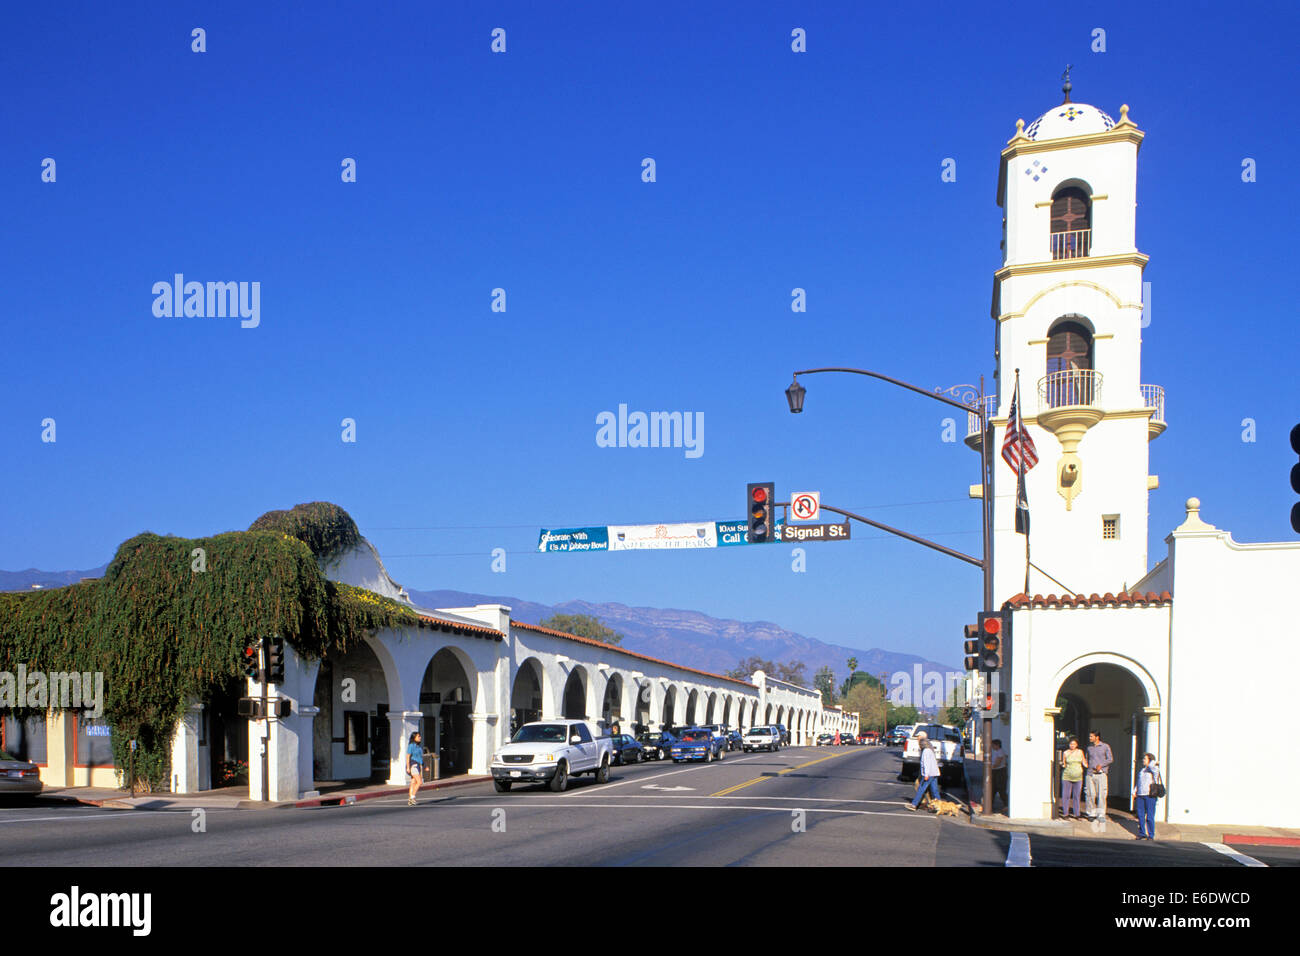 Arcade Plaza, Ojai Avenue, Ojai, comté de Ventura, Californie, USA. Banque D'Images